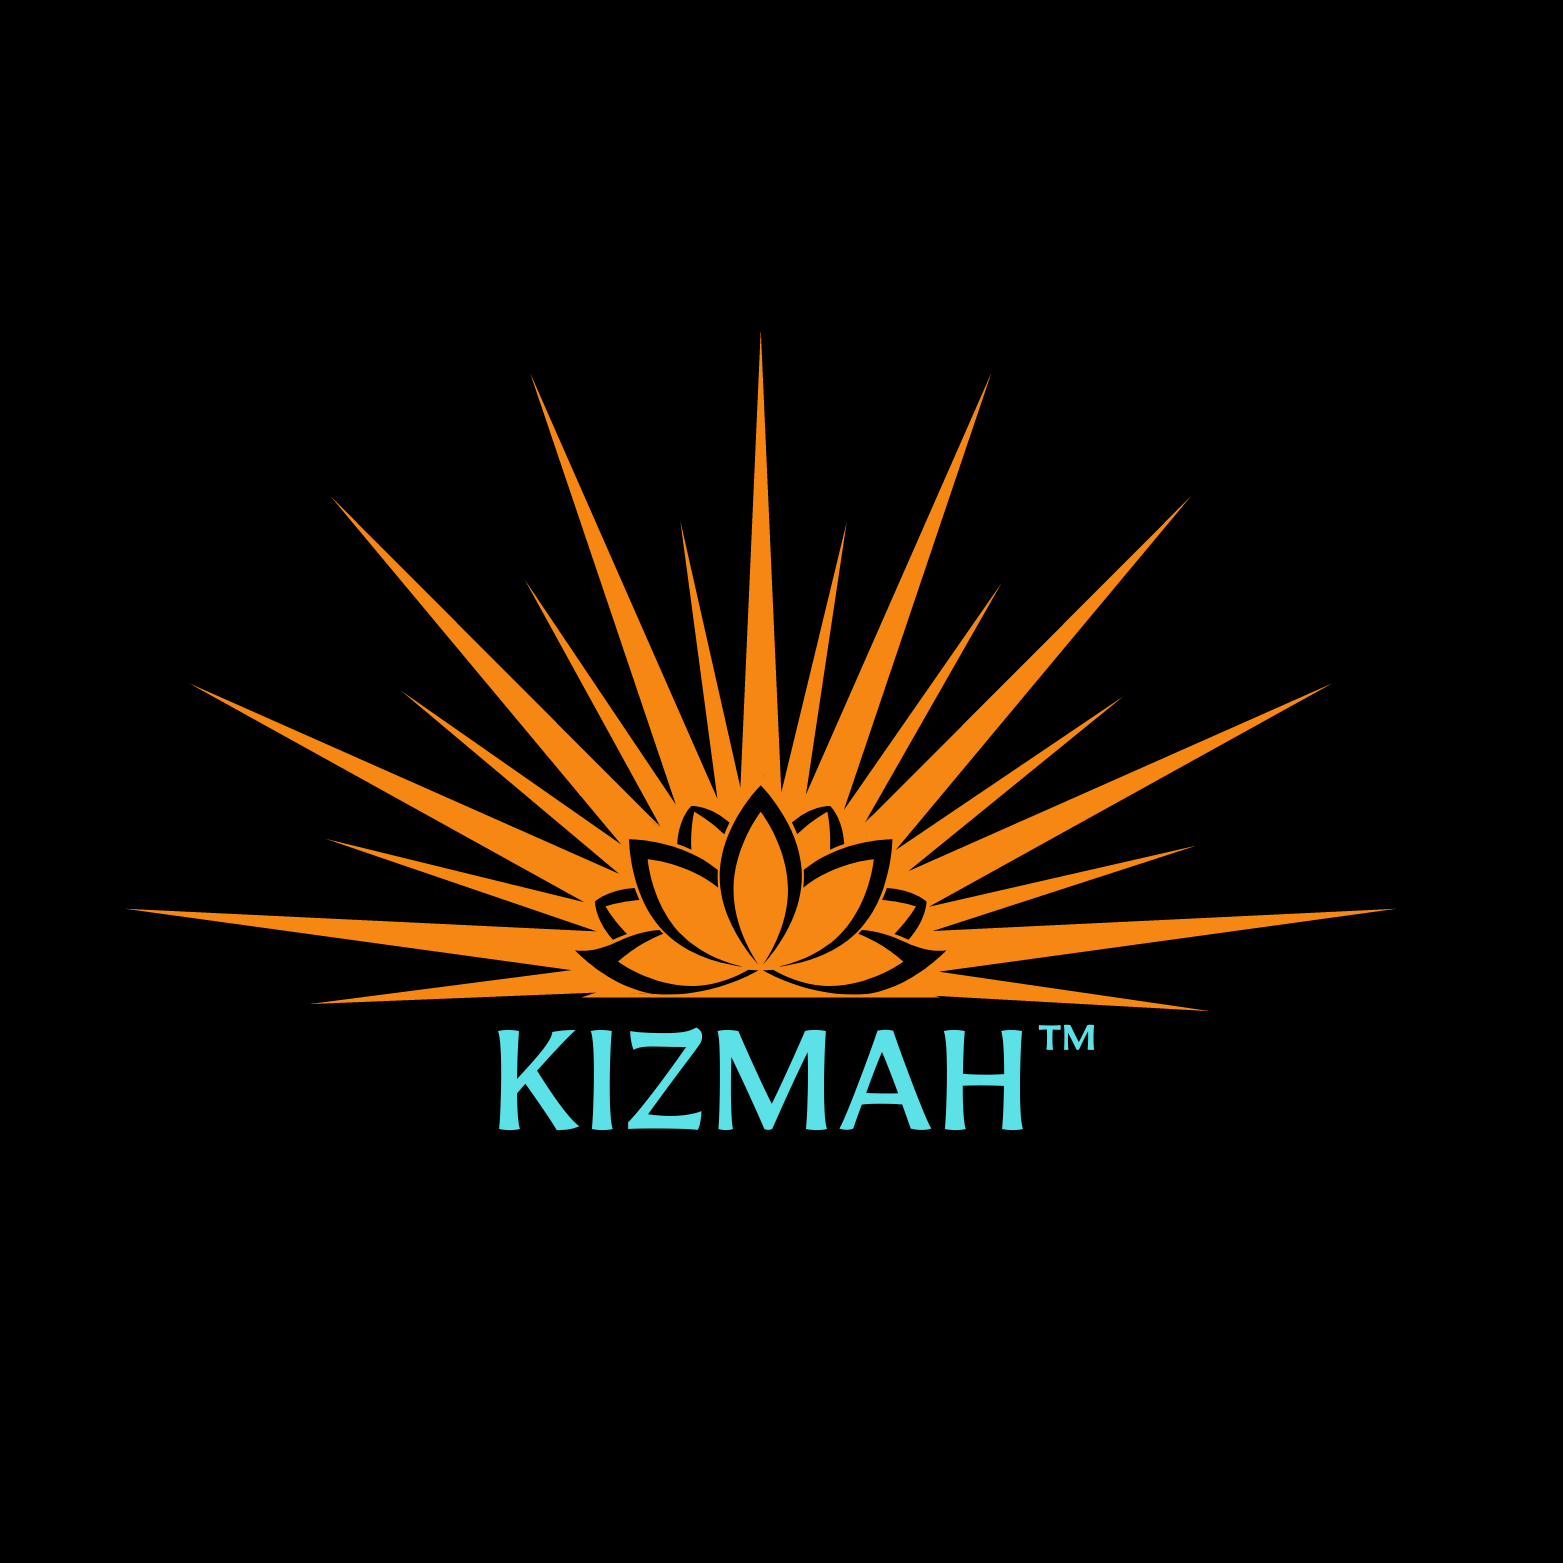 (c) Kizmah.com